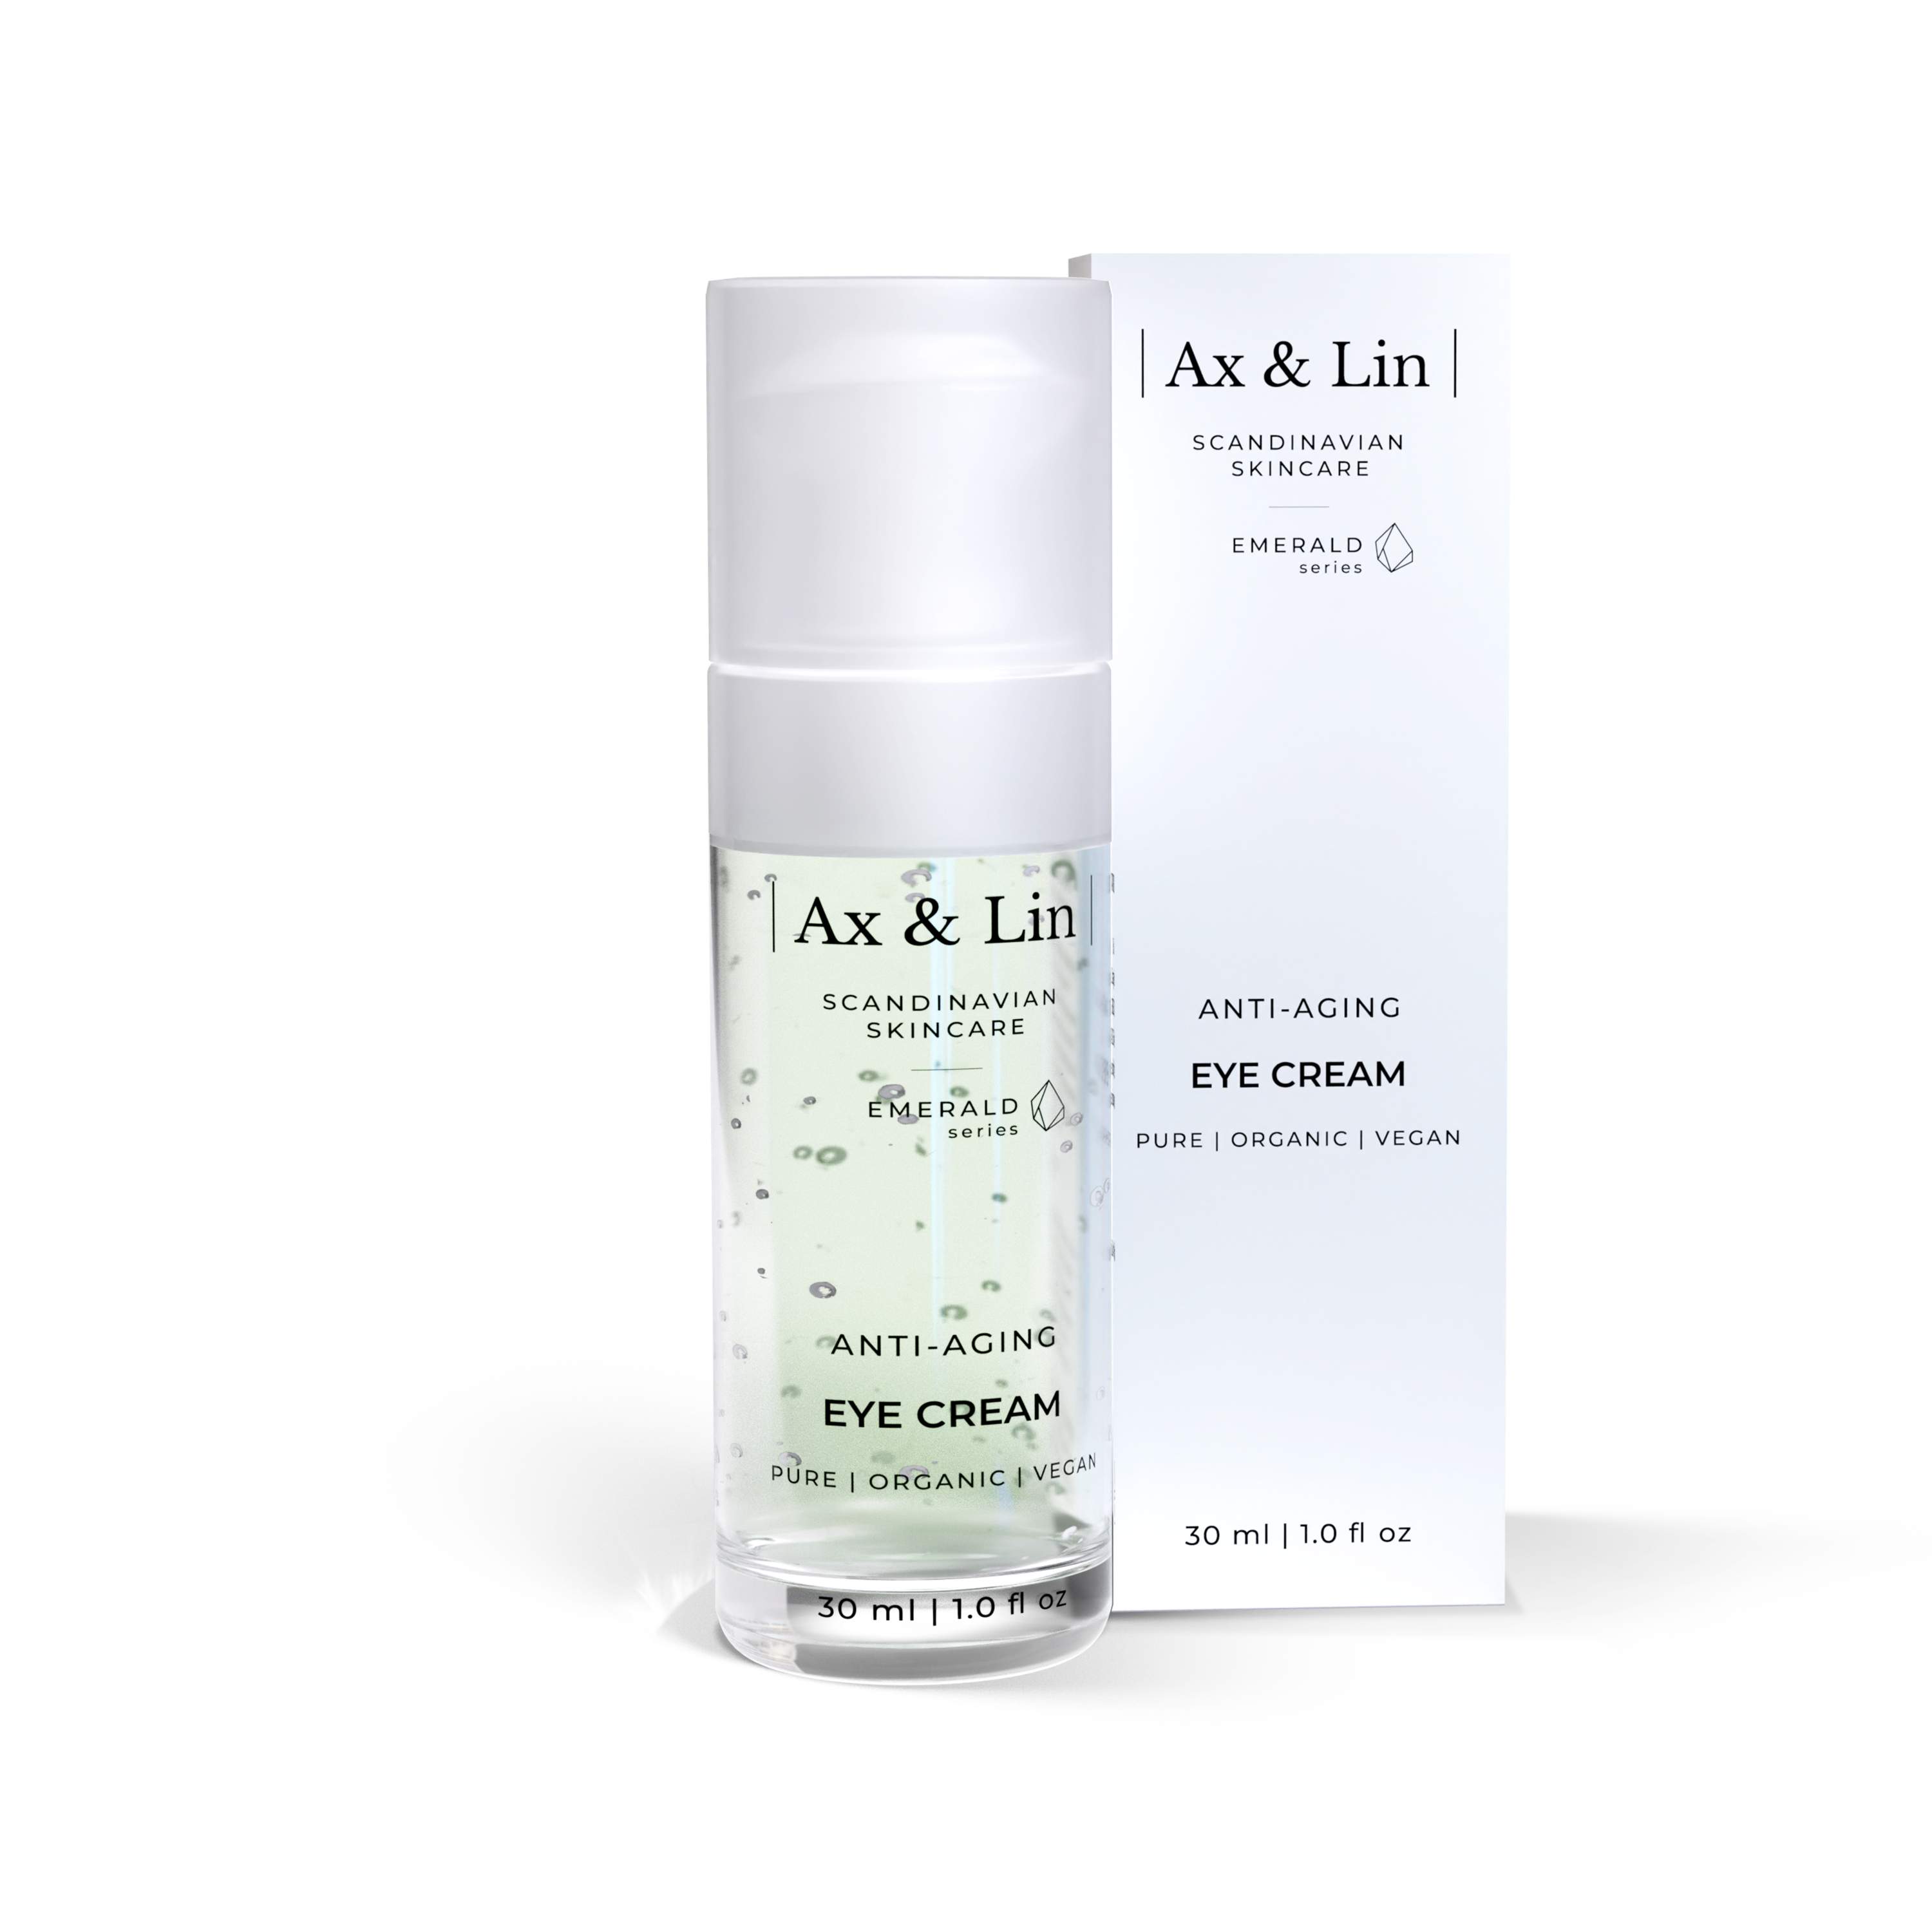 Ax & Lin - Anti-aging Eye Cream 30ml